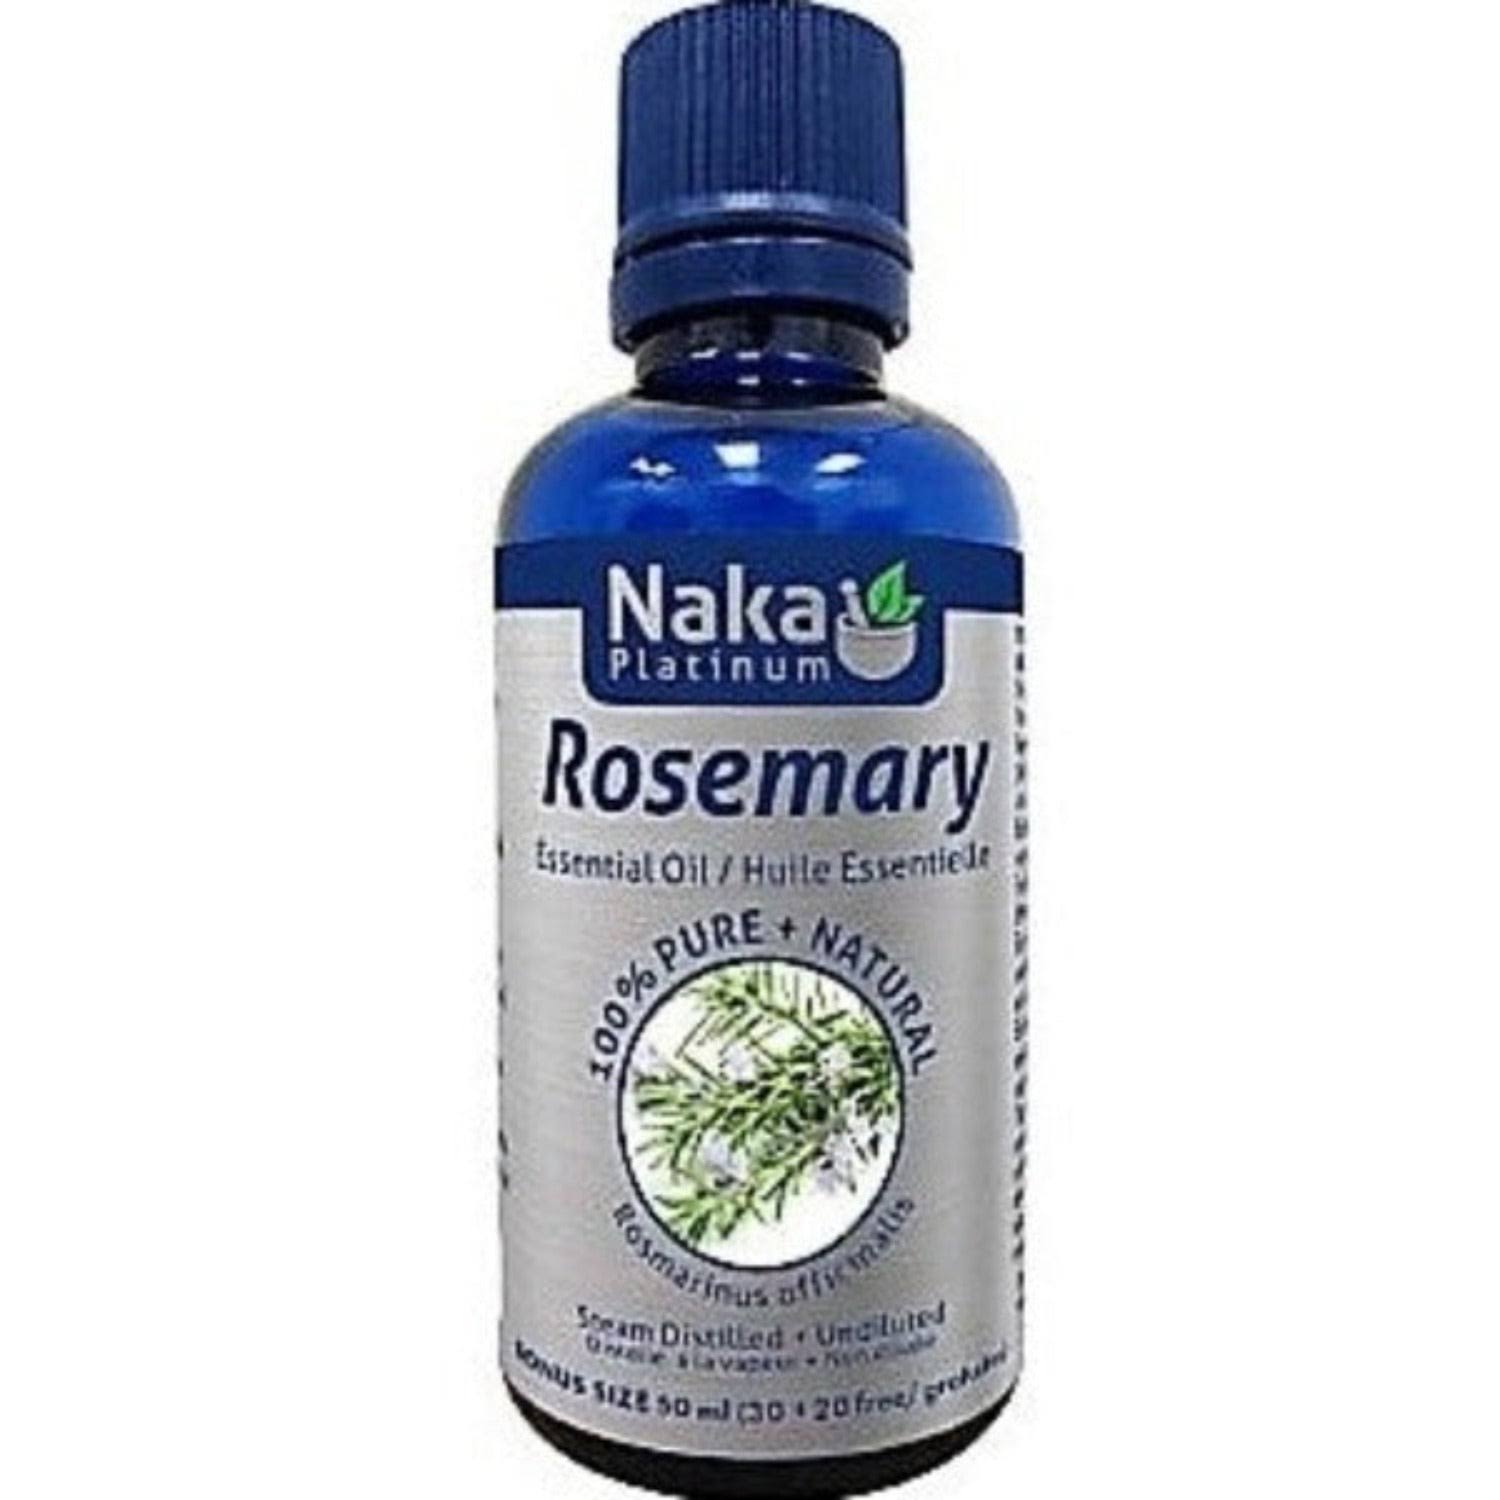 100% Pure Rosemary Essential Oil - 50ml + Bonus